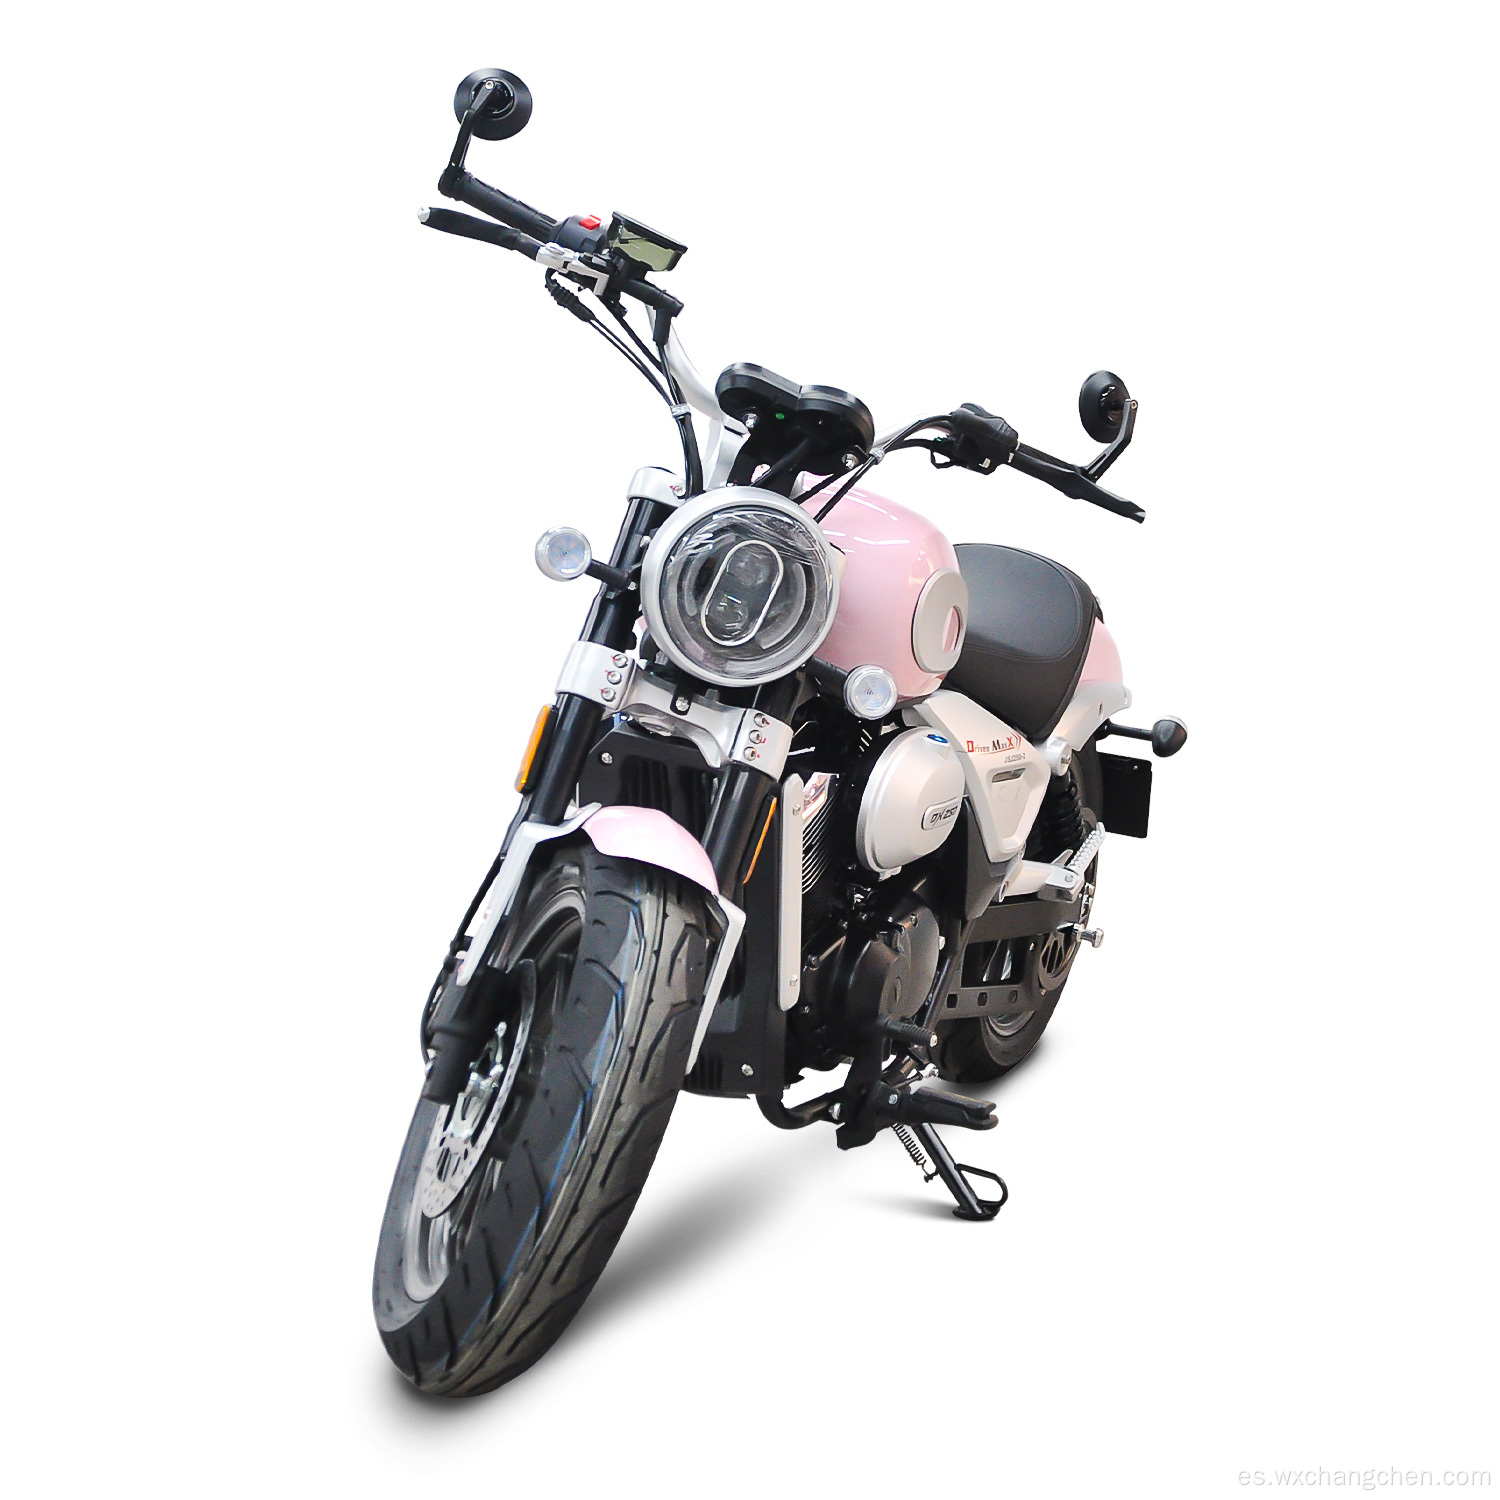 Nuevo tipo dos ruedas 250cc de cuatro cilindros de cilindro motocicletas de gasolina para adultos